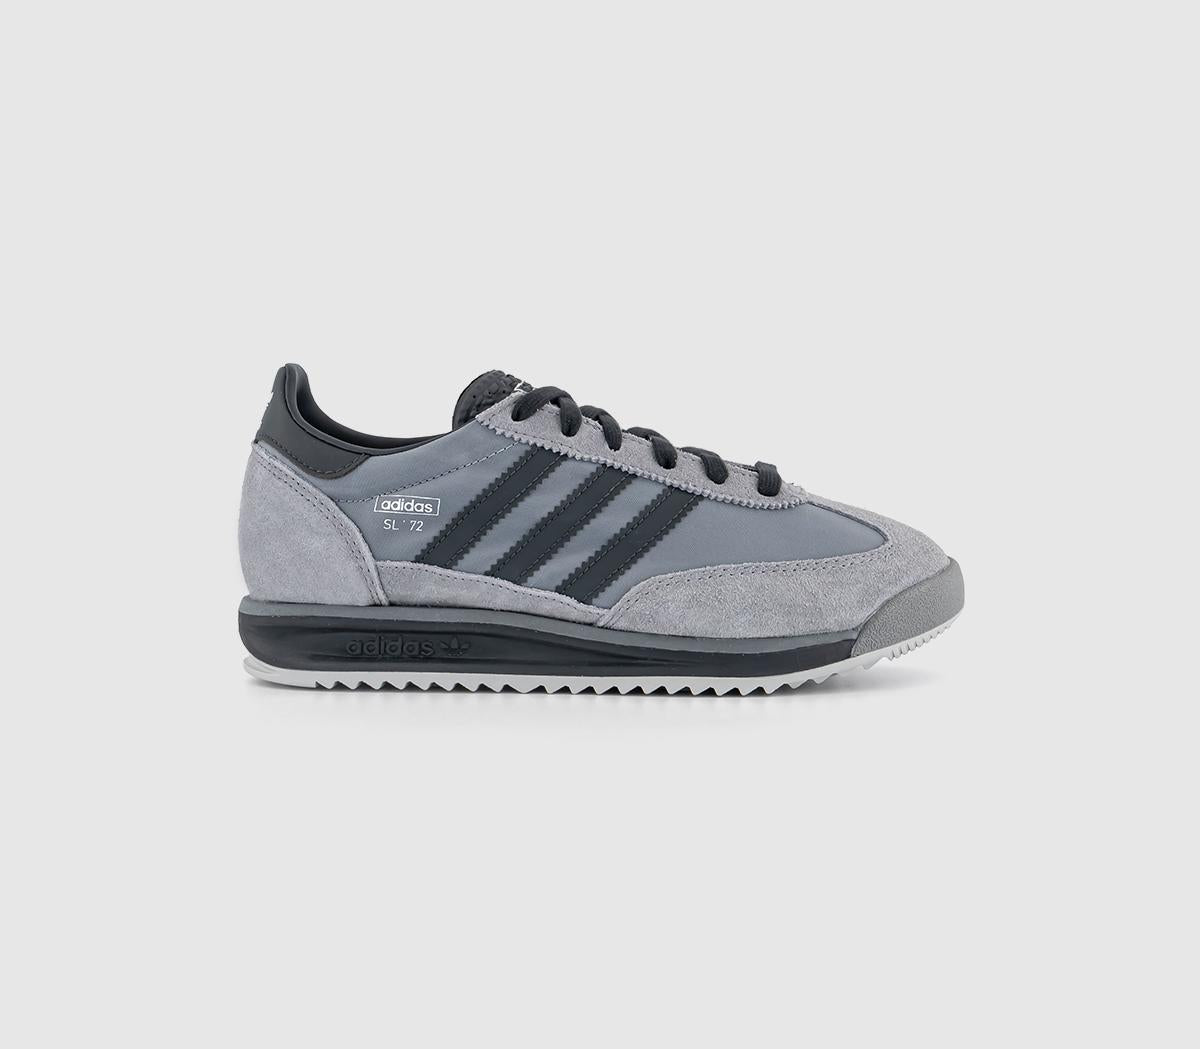 adidas SL72 Rs Trainers Grey Grey Grey Black